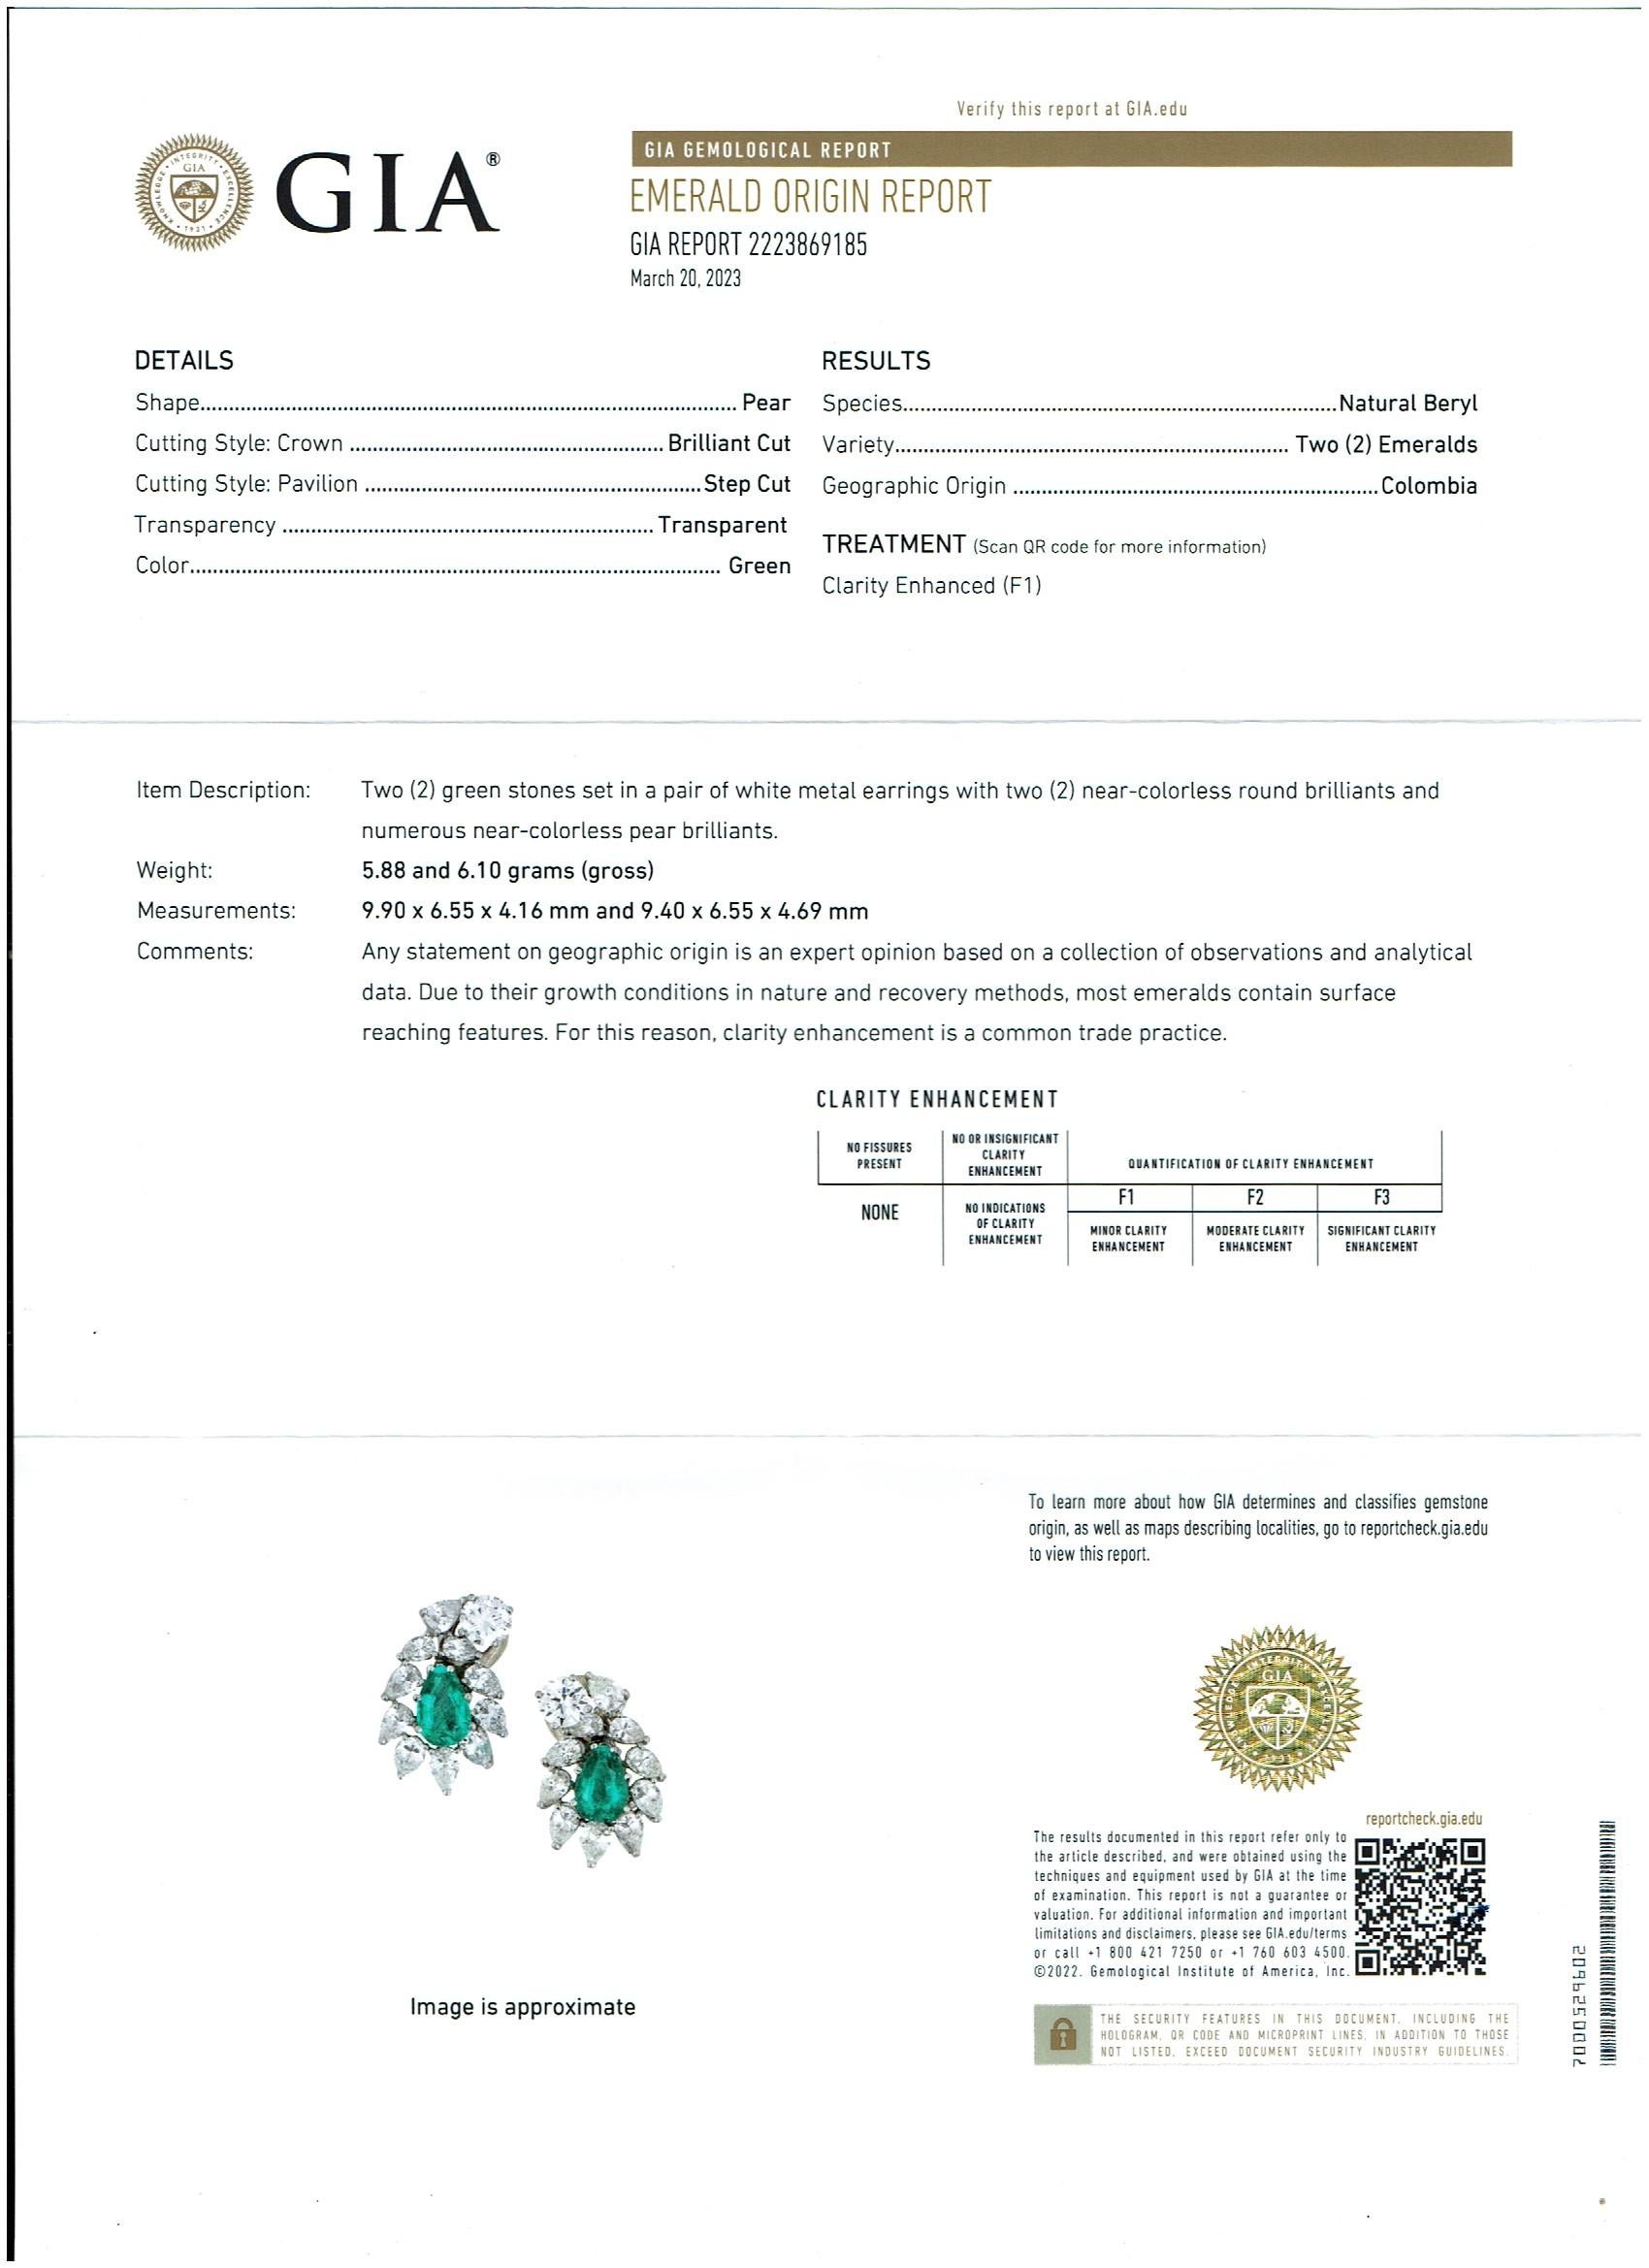 GIA-zertifizierter F1 4ct kolumbianischer Smaragd und 2 GIA-Zertifikate für jeden der Diamanten 0,85 ct FVVS2 und 0,99 ct GVVS2 Ohrringe 18kW Gold
Feinste birnenförmige Smaragd-Diamant-Clip-Ohrringe 18 Karat Gold mit Omega-Rücken
Die Farbe des